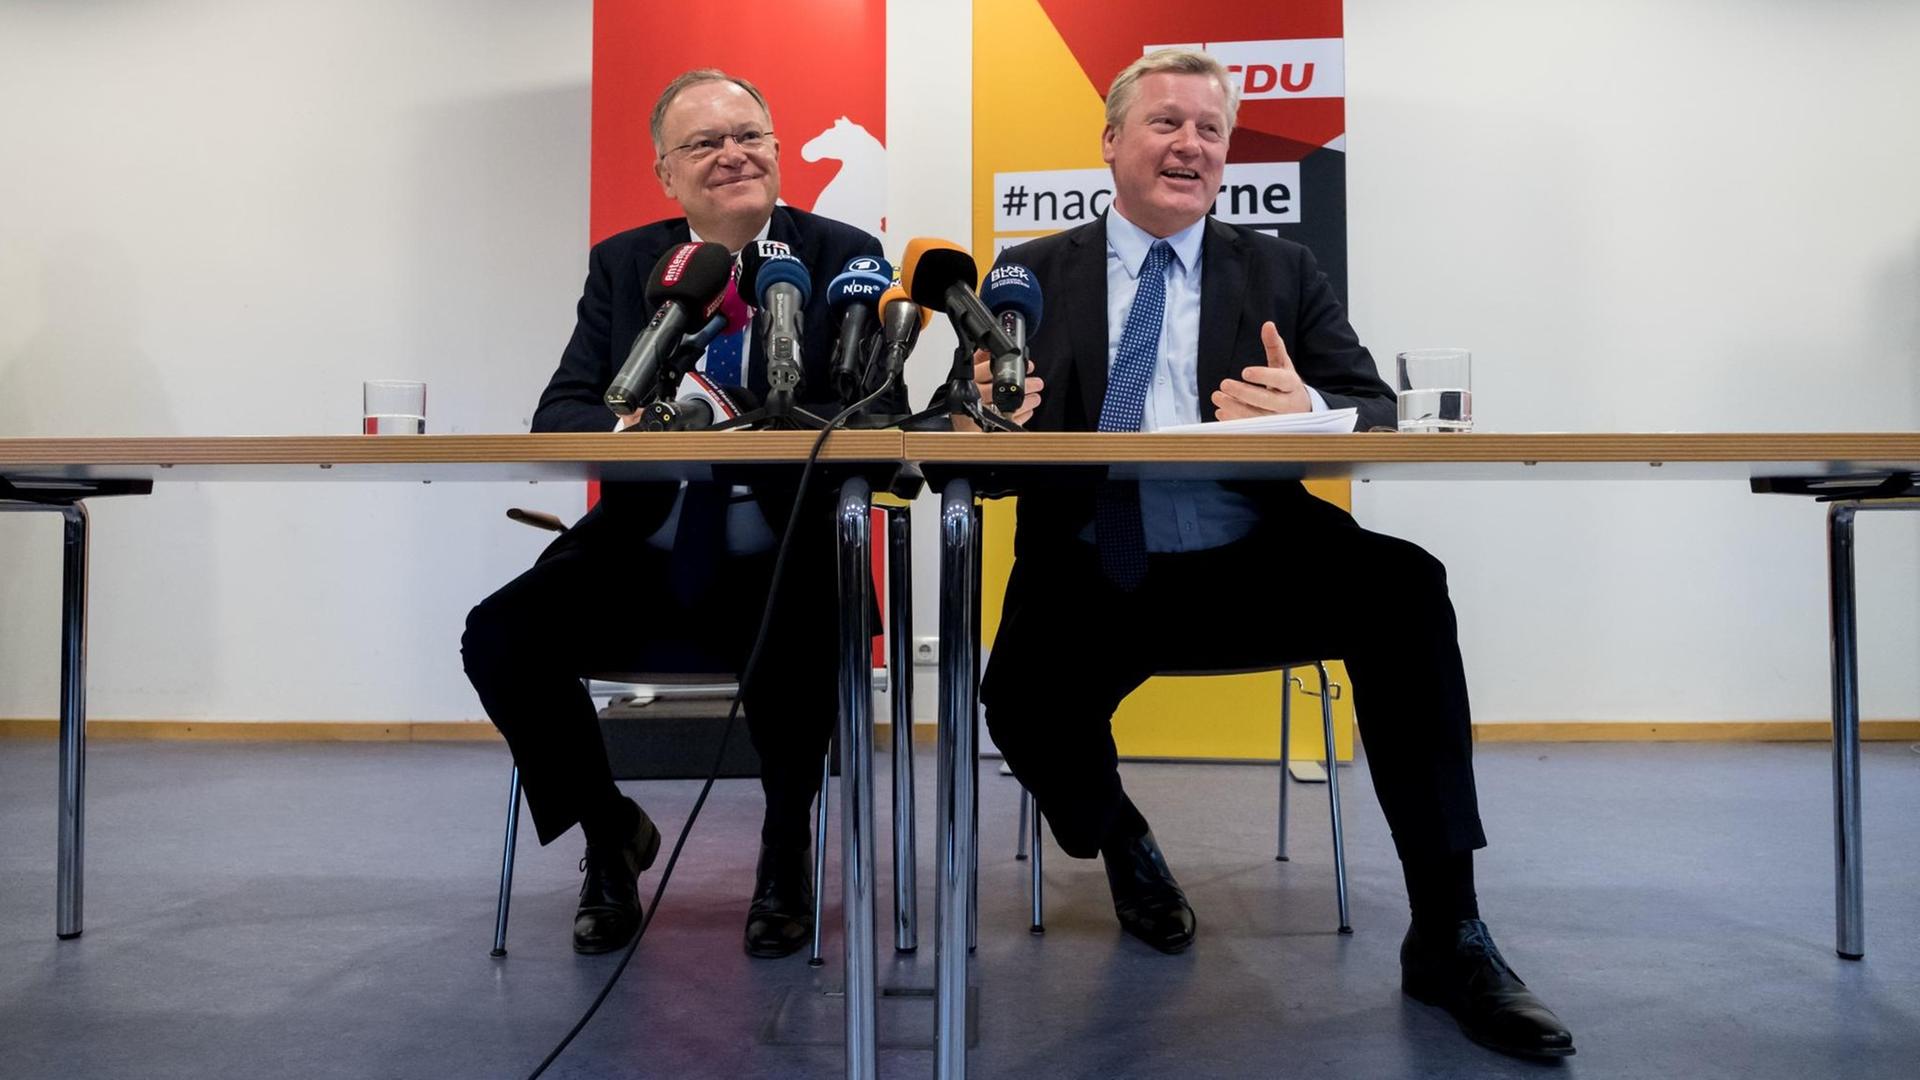 Der Ministerpräsident von Niedersachsen, Stephan Weil (l, SPD) und der CDU-Landesvorsitzende, Bernd Althusmann, verkünden eine Große Koalition für das Land.